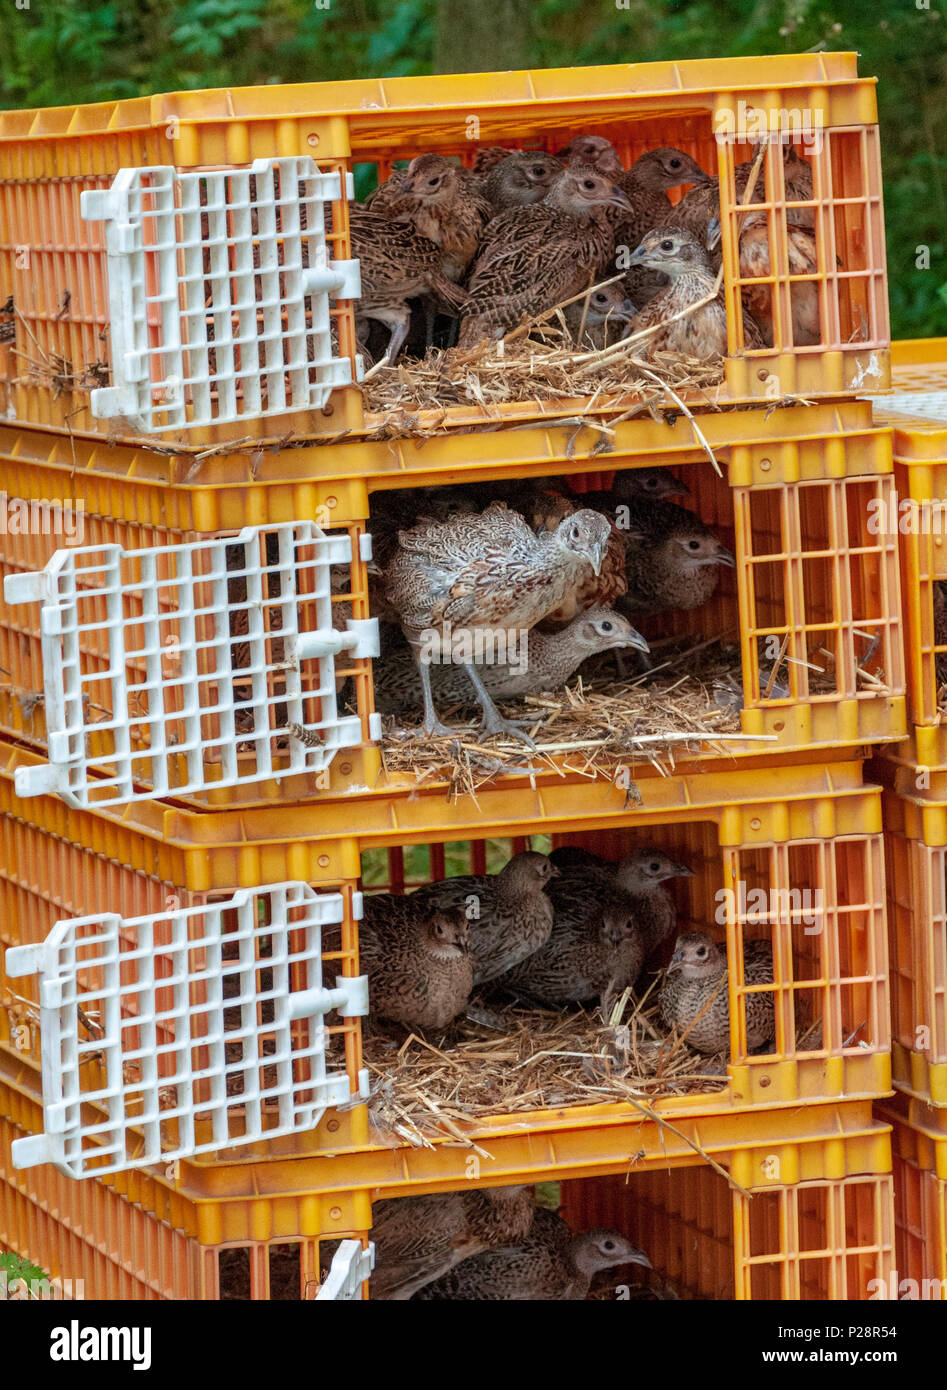 Siete semanas de edad, faisán polluelos, a menudo conocido como el faisán poults, siendo liberado en un lanzamiento gamekeepers pen de las jaulas utilizadas para su transporte desde la granja de juego Foto de stock